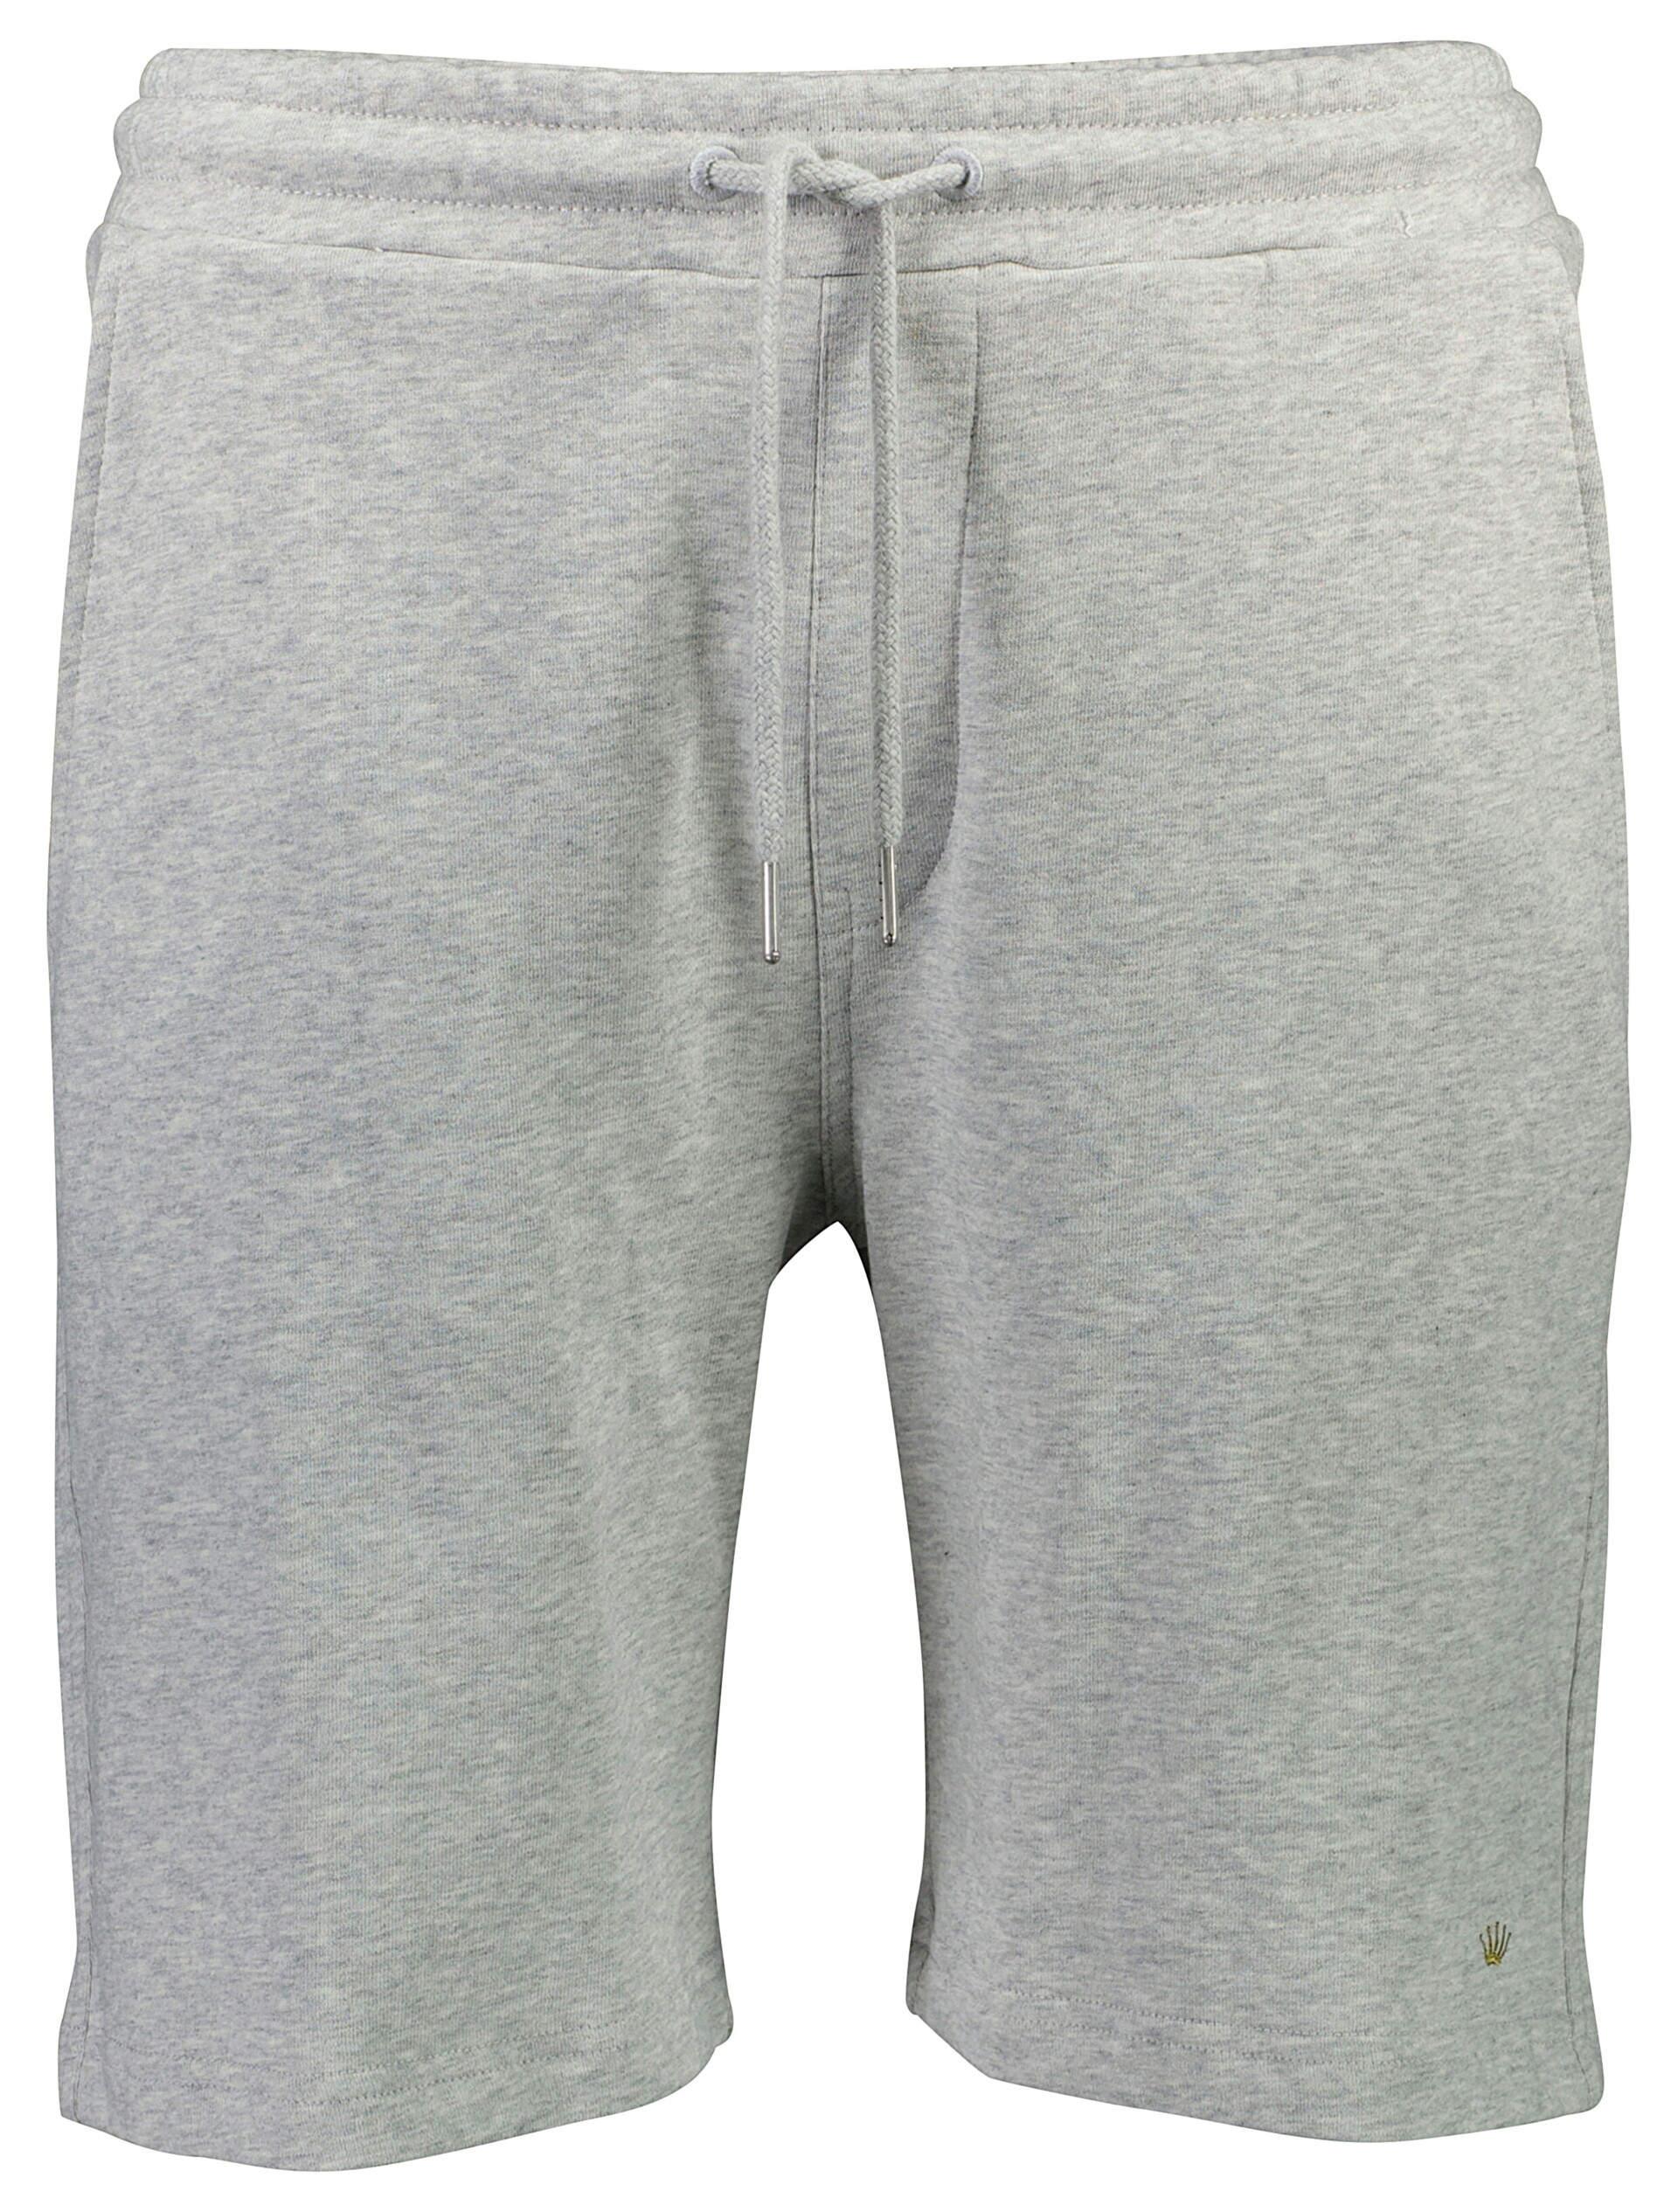 Junk de Luxe Casual shorts grey / lt grey mel